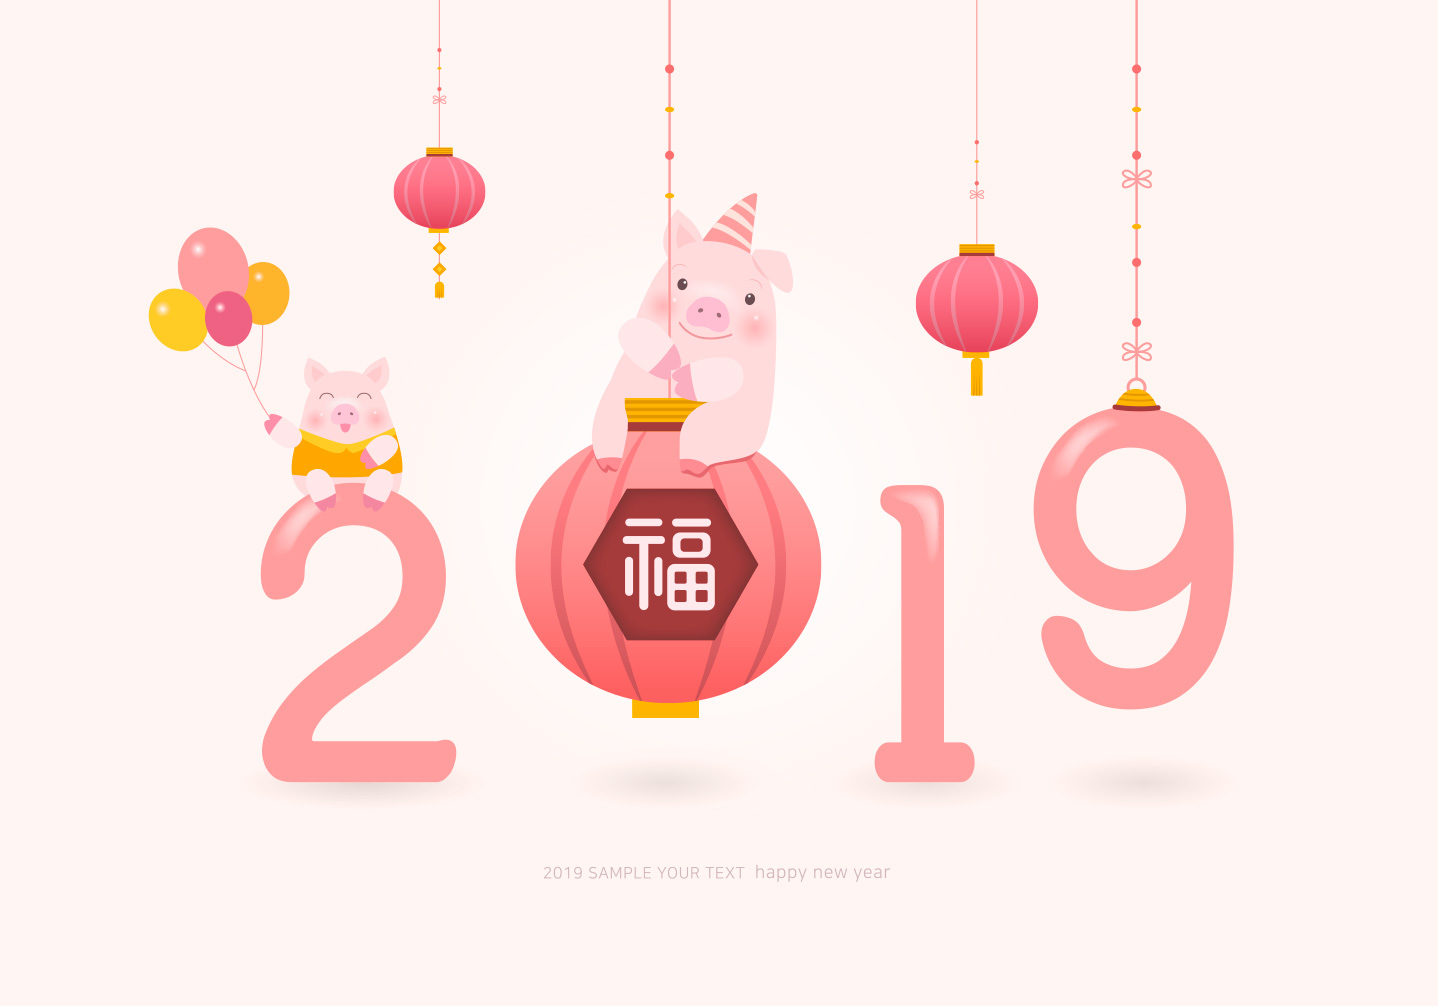 2019年新年贺喜主题可爱呆萌猪年粉色系海报PSD模版素材